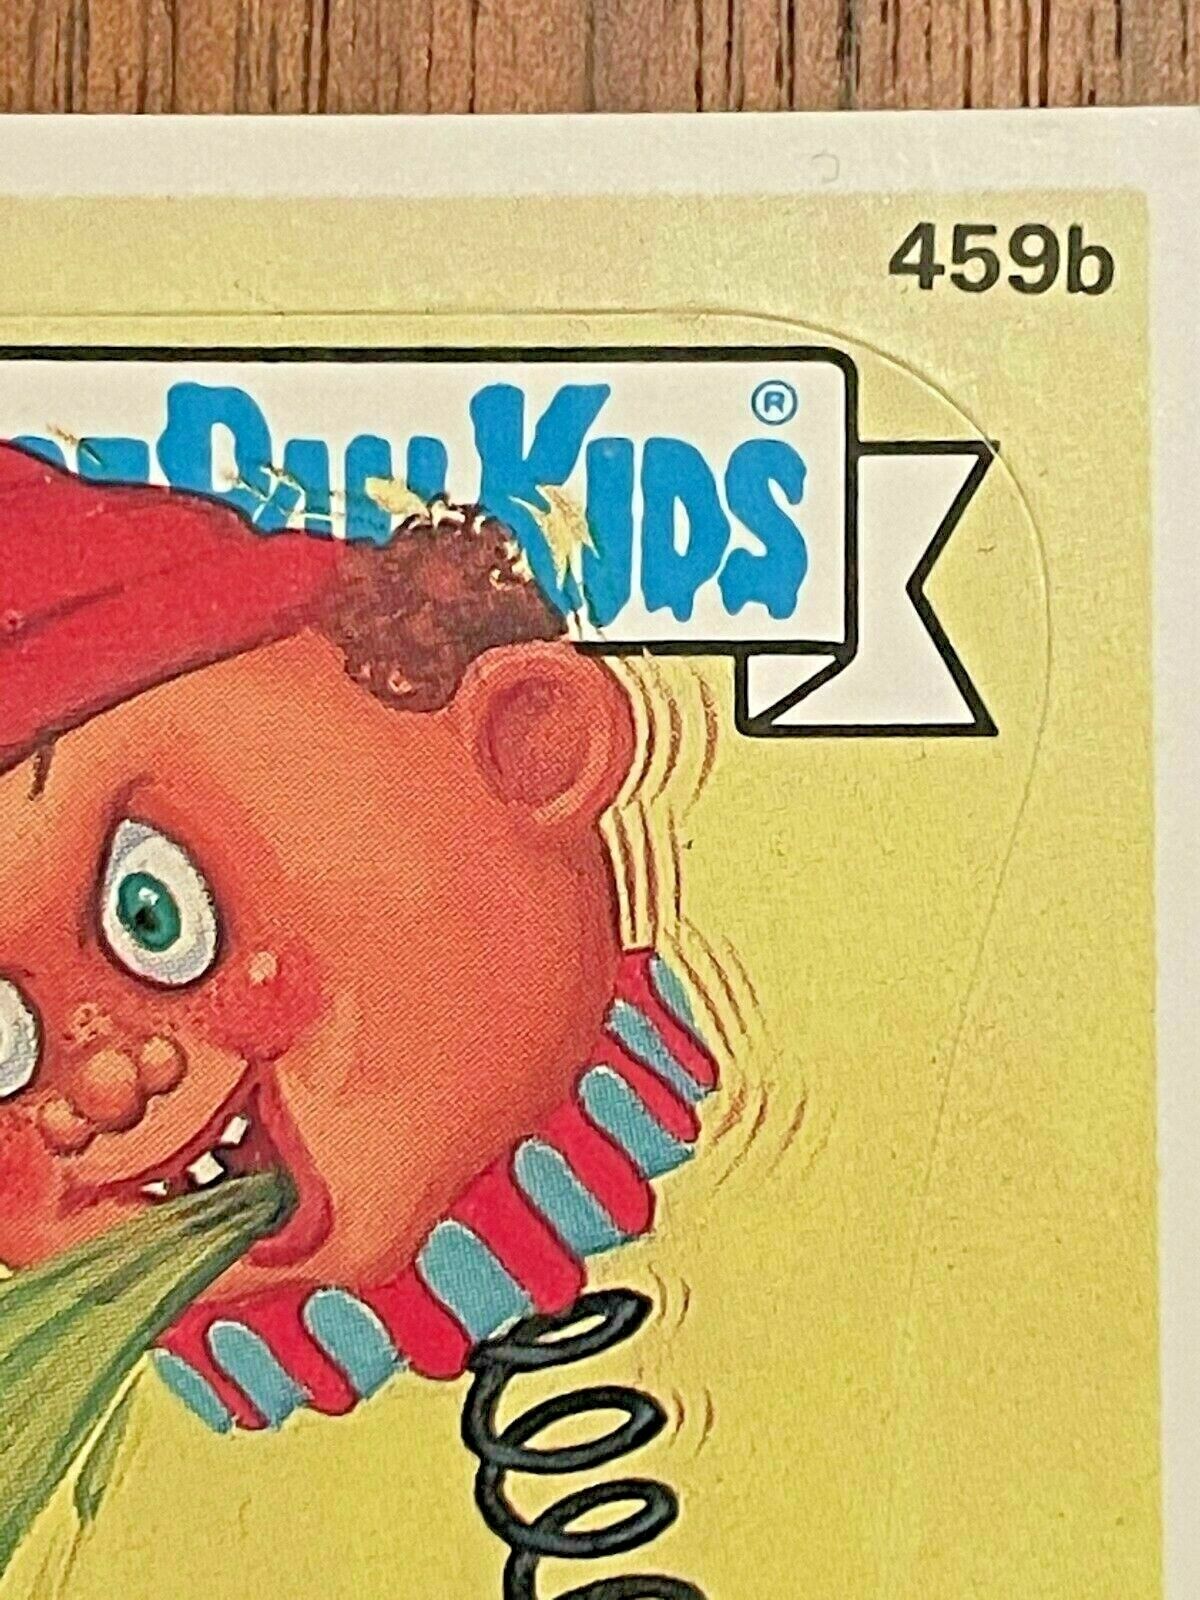 1987 Topps Garbage Pail Kids 459b JUICY JULES Trading Card LINE SPLOTCH ERROR